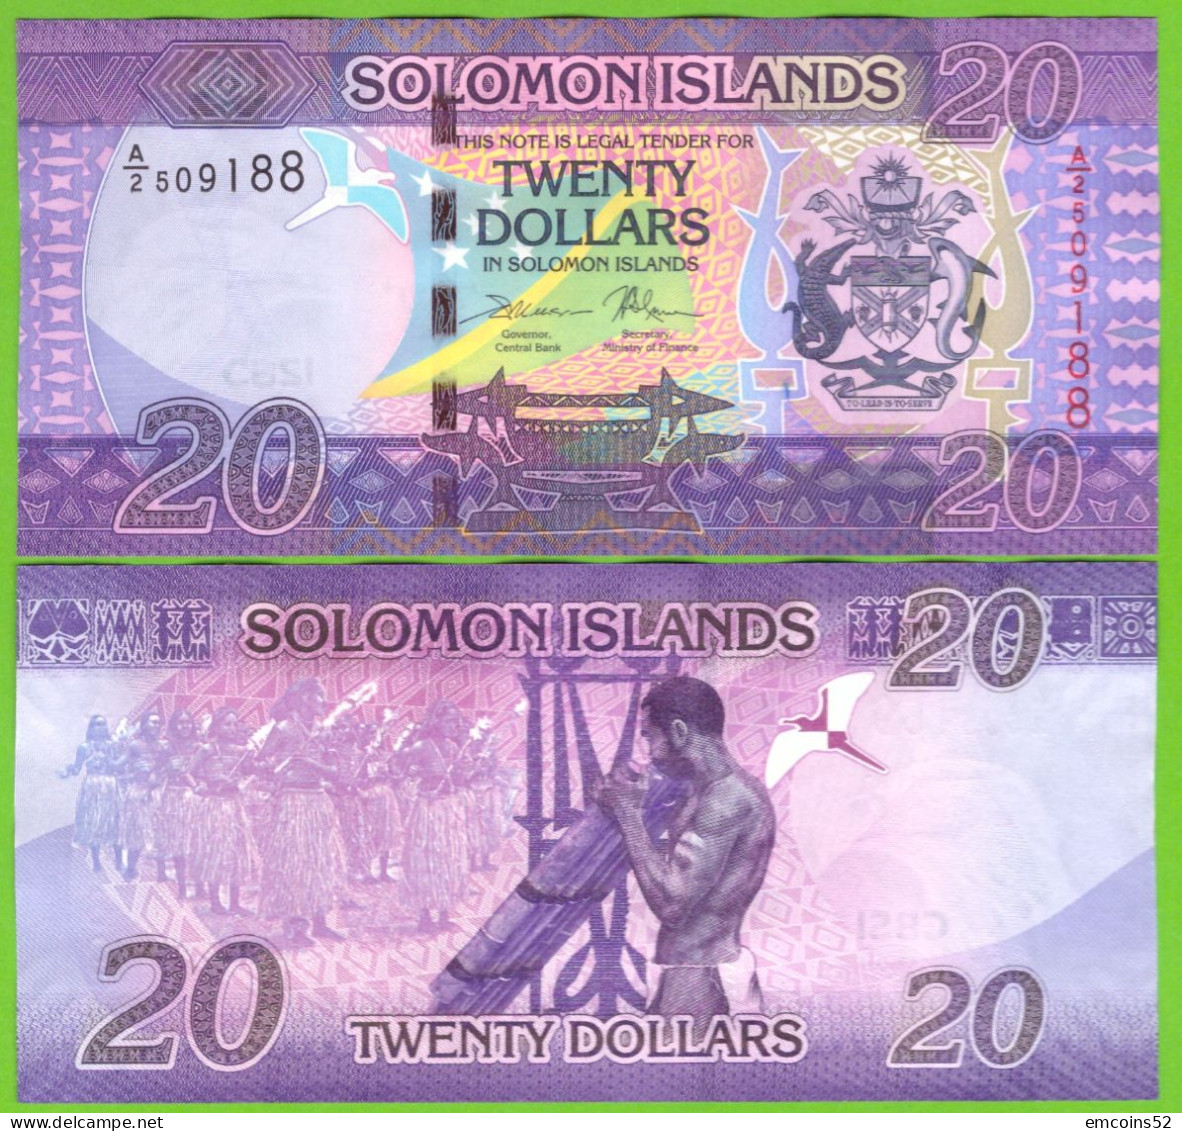 SOLOMON ISLANDS 20 DOLLARS 2017  P-34(1)  UNC - Solomonen